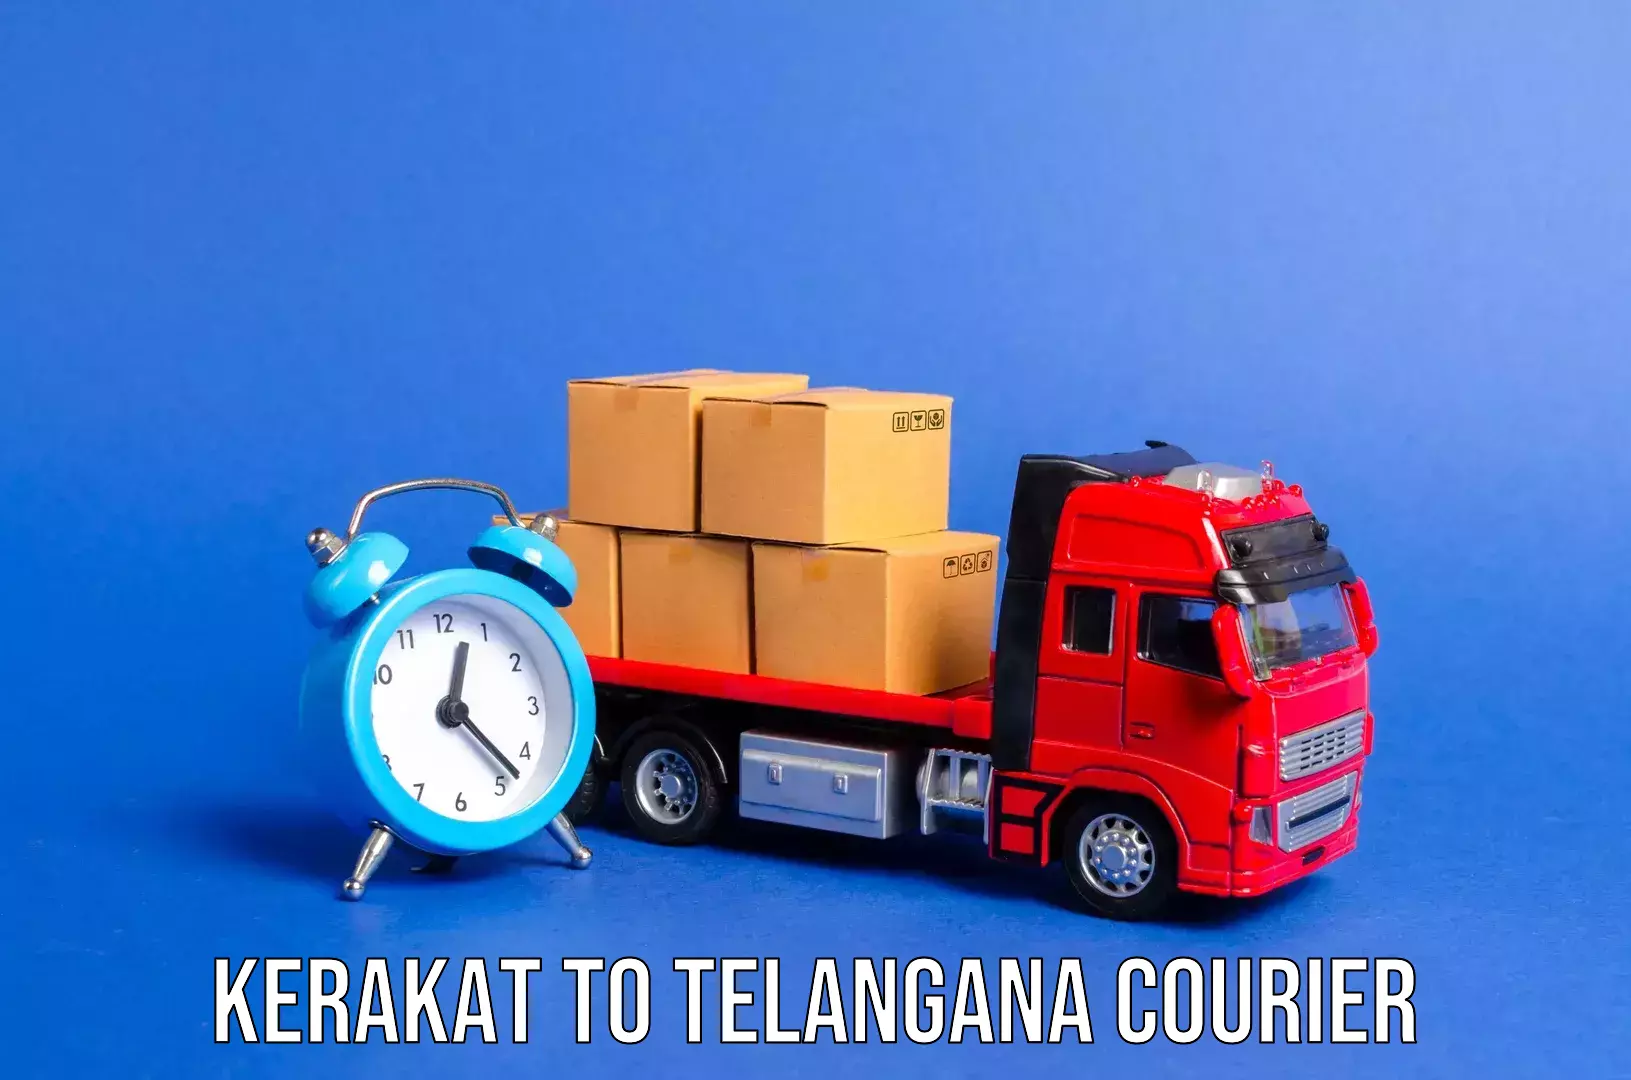 Urgent luggage shipment Kerakat to Warangal